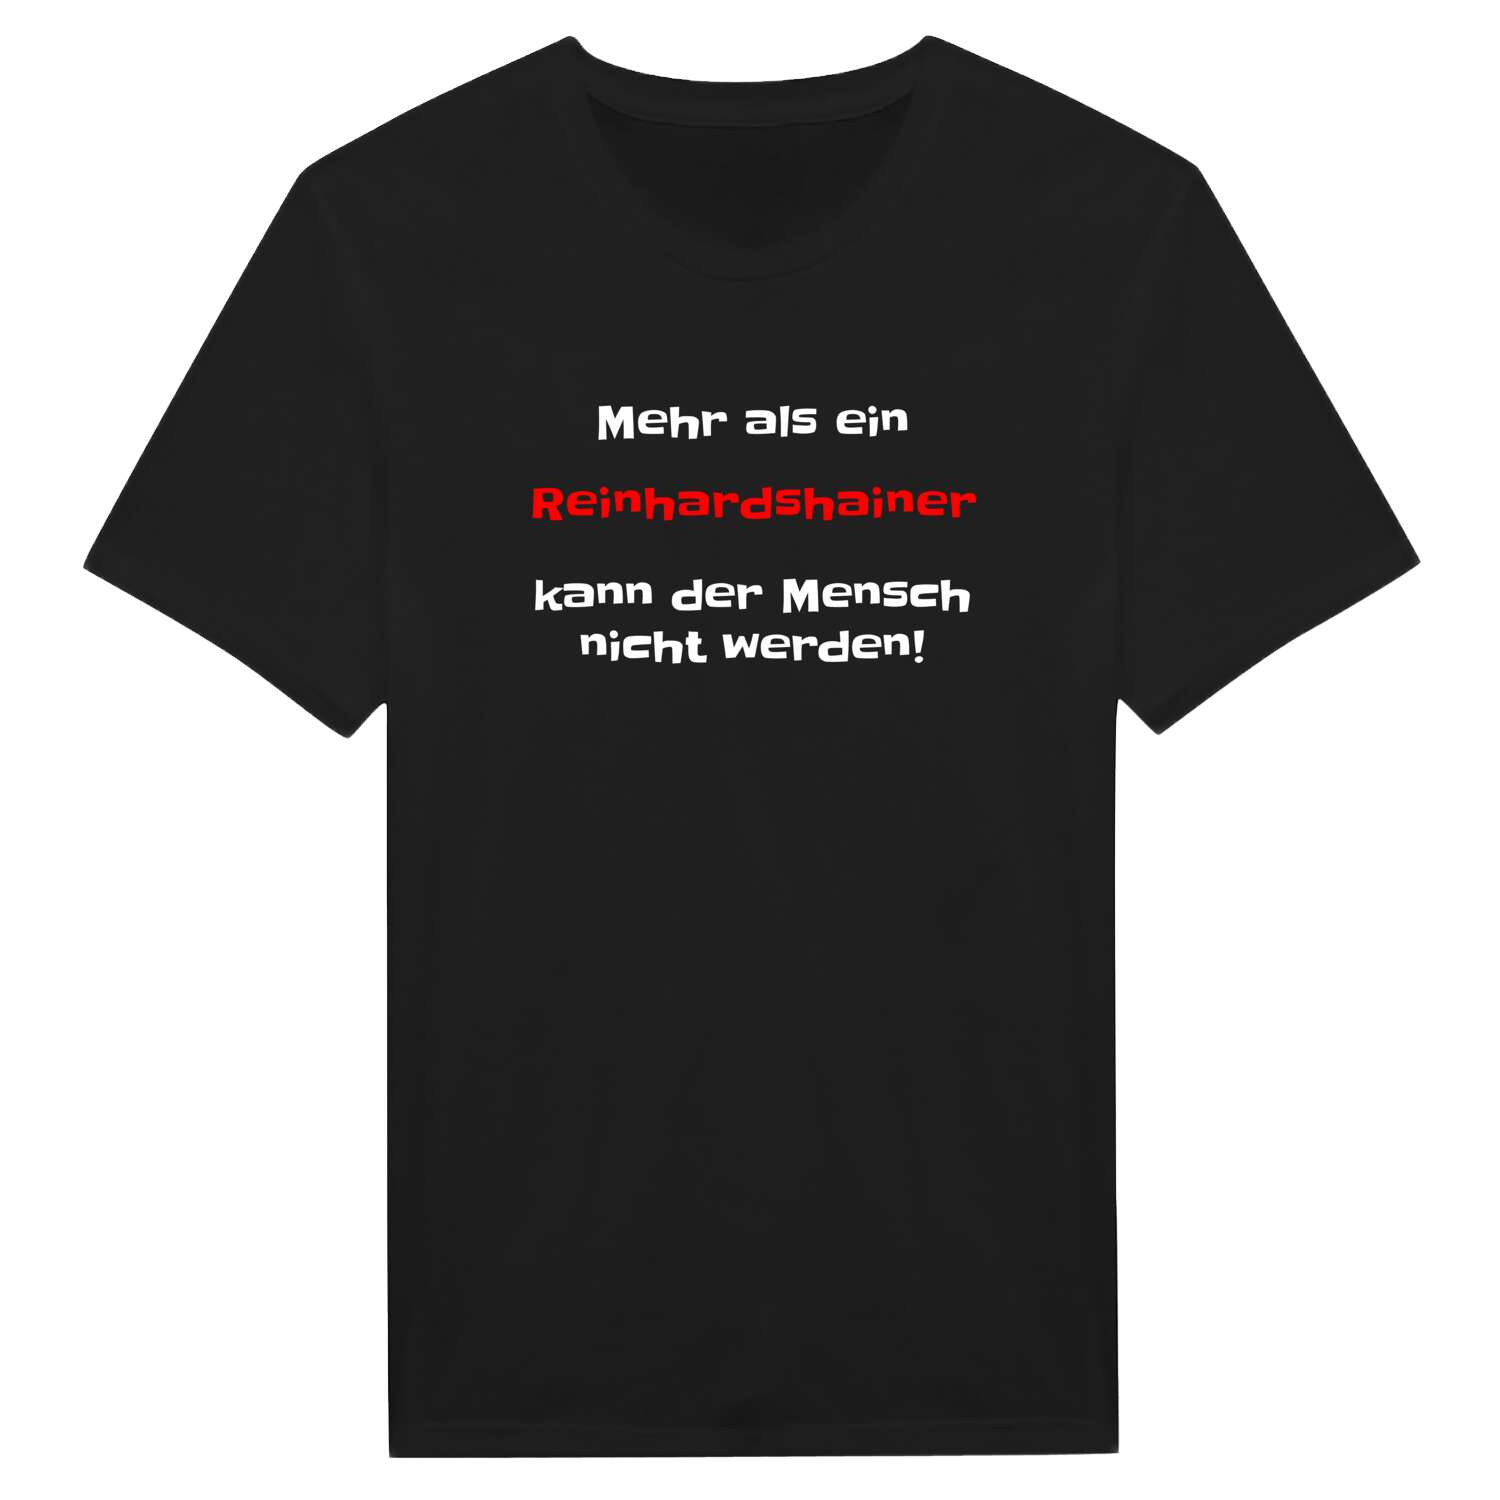 Reinhardshain T-Shirt »Mehr als ein«